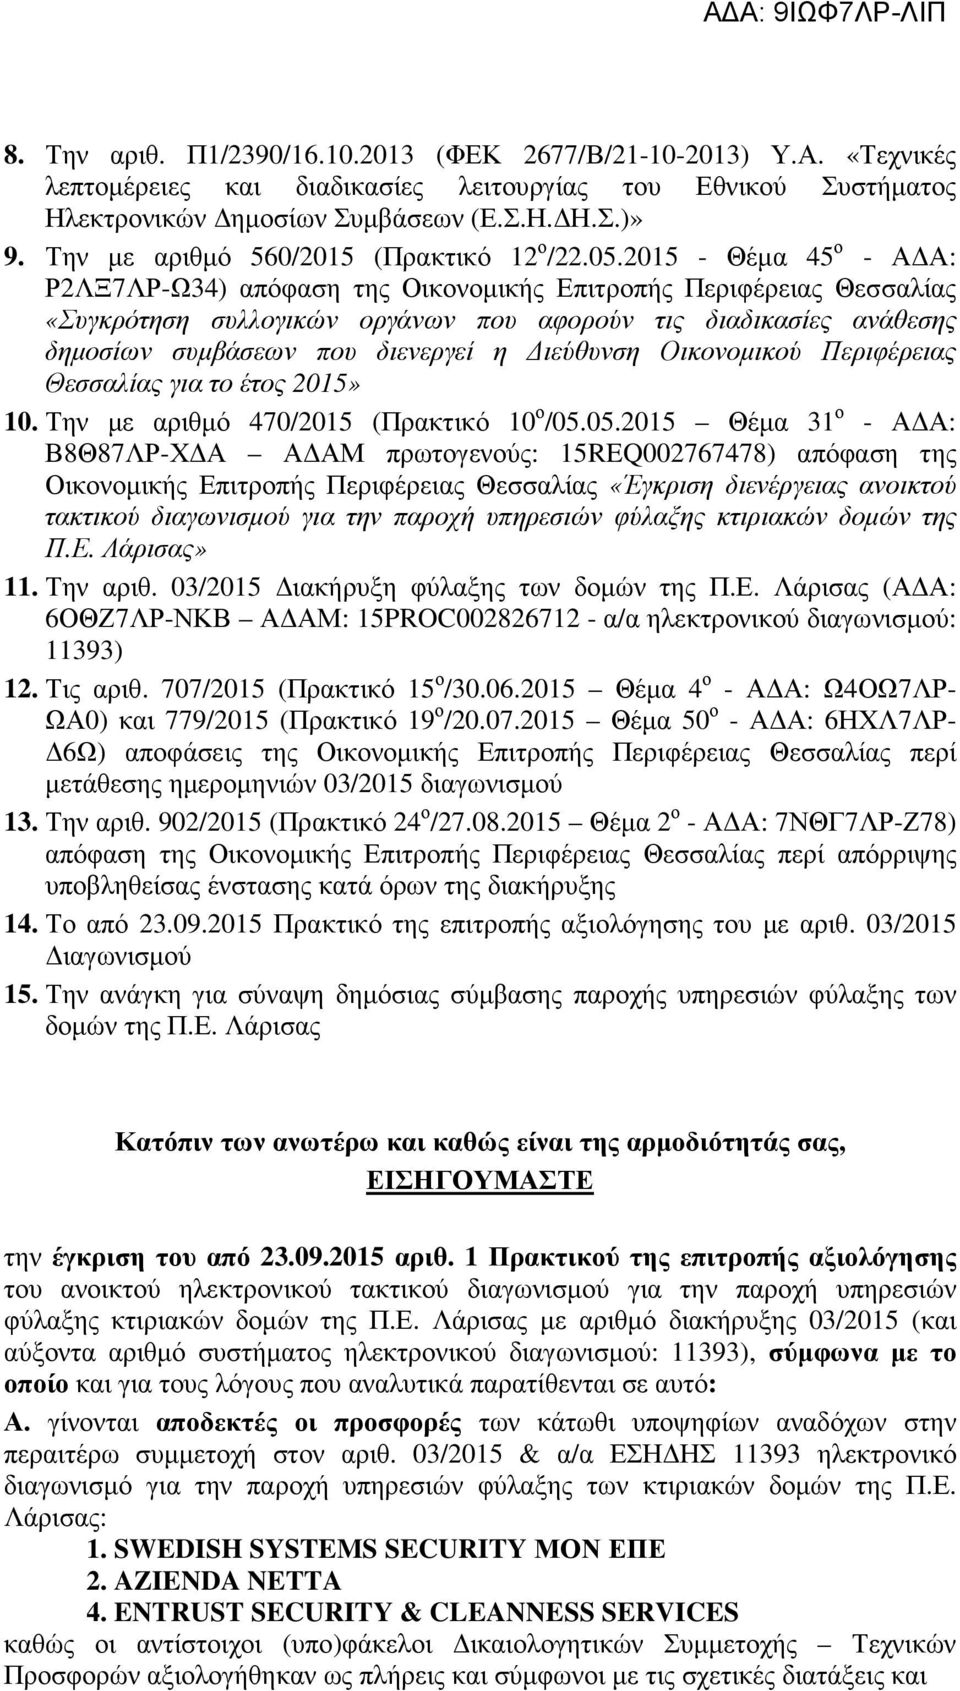 2015 - Θέμα 45 ο - ΑΔΑ: Ρ2ΛΞ7ΛΡ-Ω34) απόφαση της Οικονομικής Επιτροπής Περιφέρειας Θεσσαλίας «Συγκρότηση συλλογικών οργάνων που αφορούν τις διαδικασίες ανάθεσης δημοσίων συμβάσεων που διενεργεί η